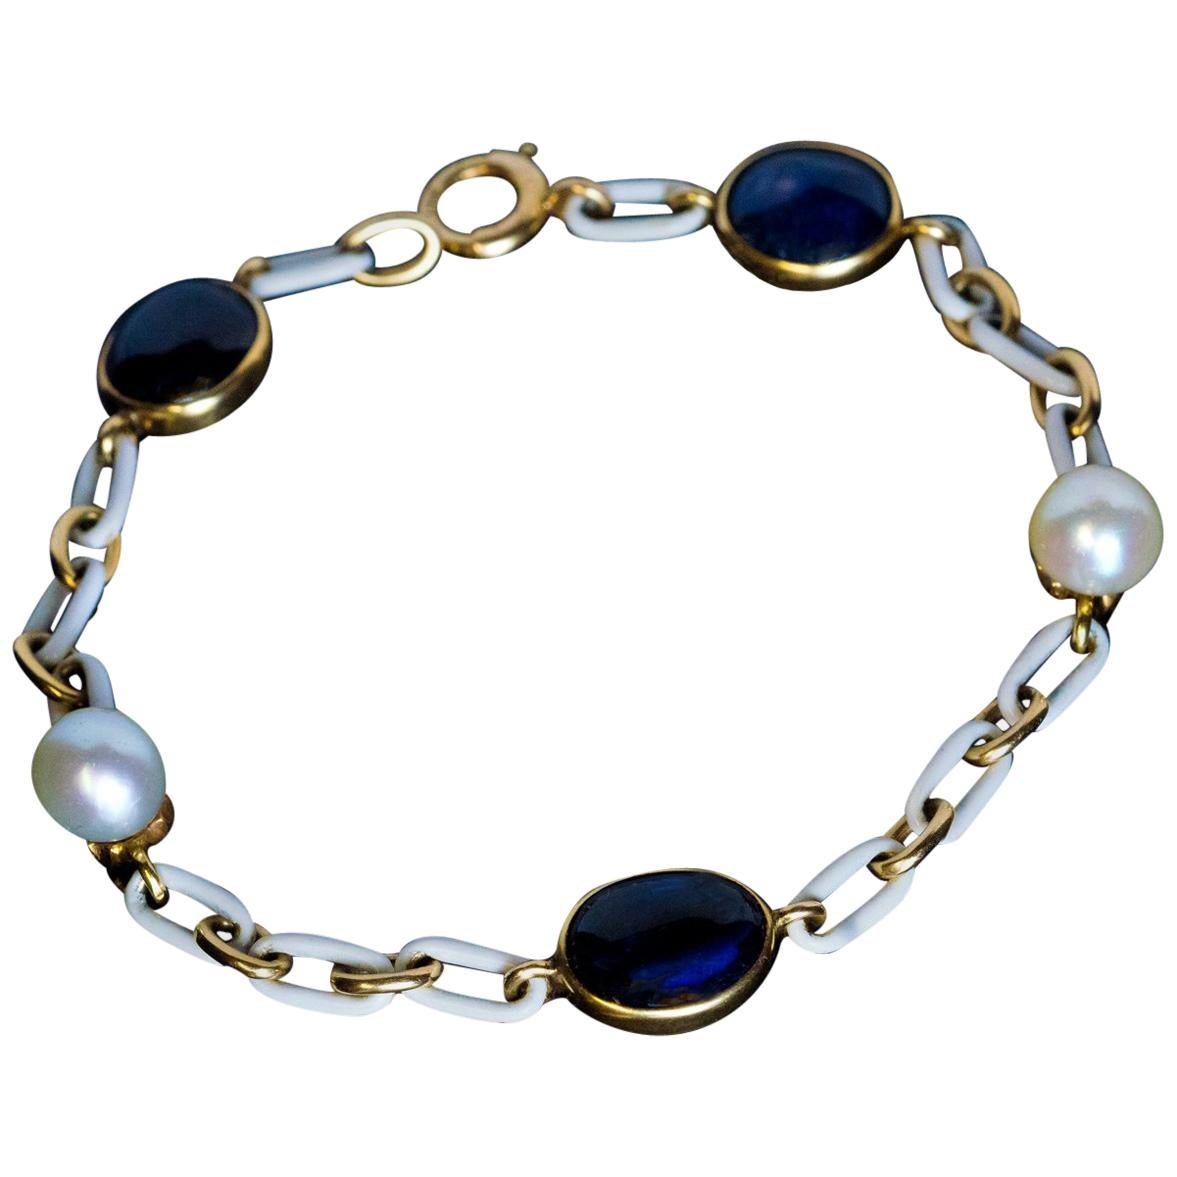 Bracelet ancien en or avec cabochons de saphirs, perles et émail